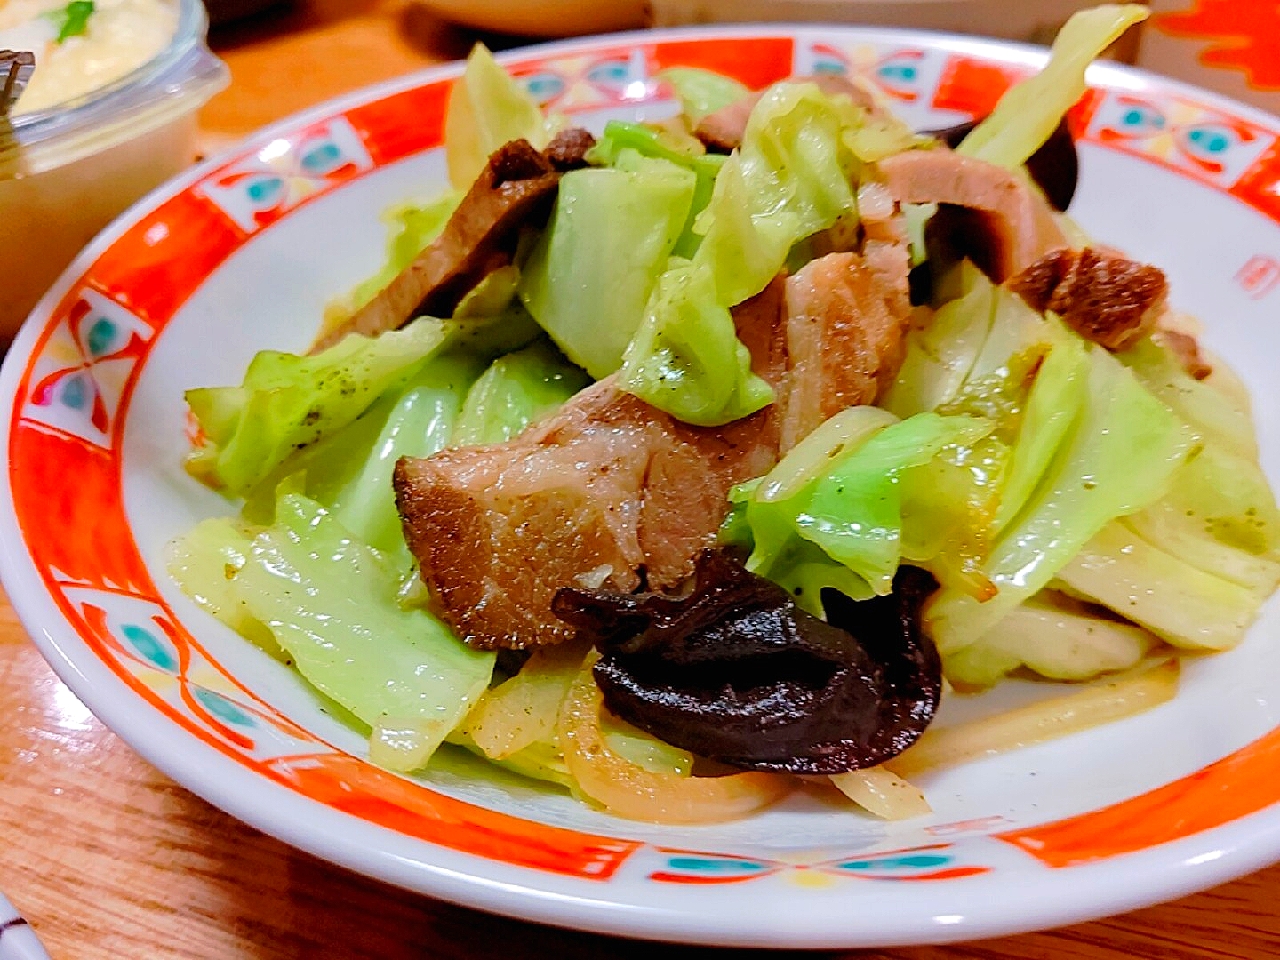 Naomi Furuyaさんの料理 我が家の煮豚と
おうち野菜肉厚キャベツ炒め🐖🥬🧅